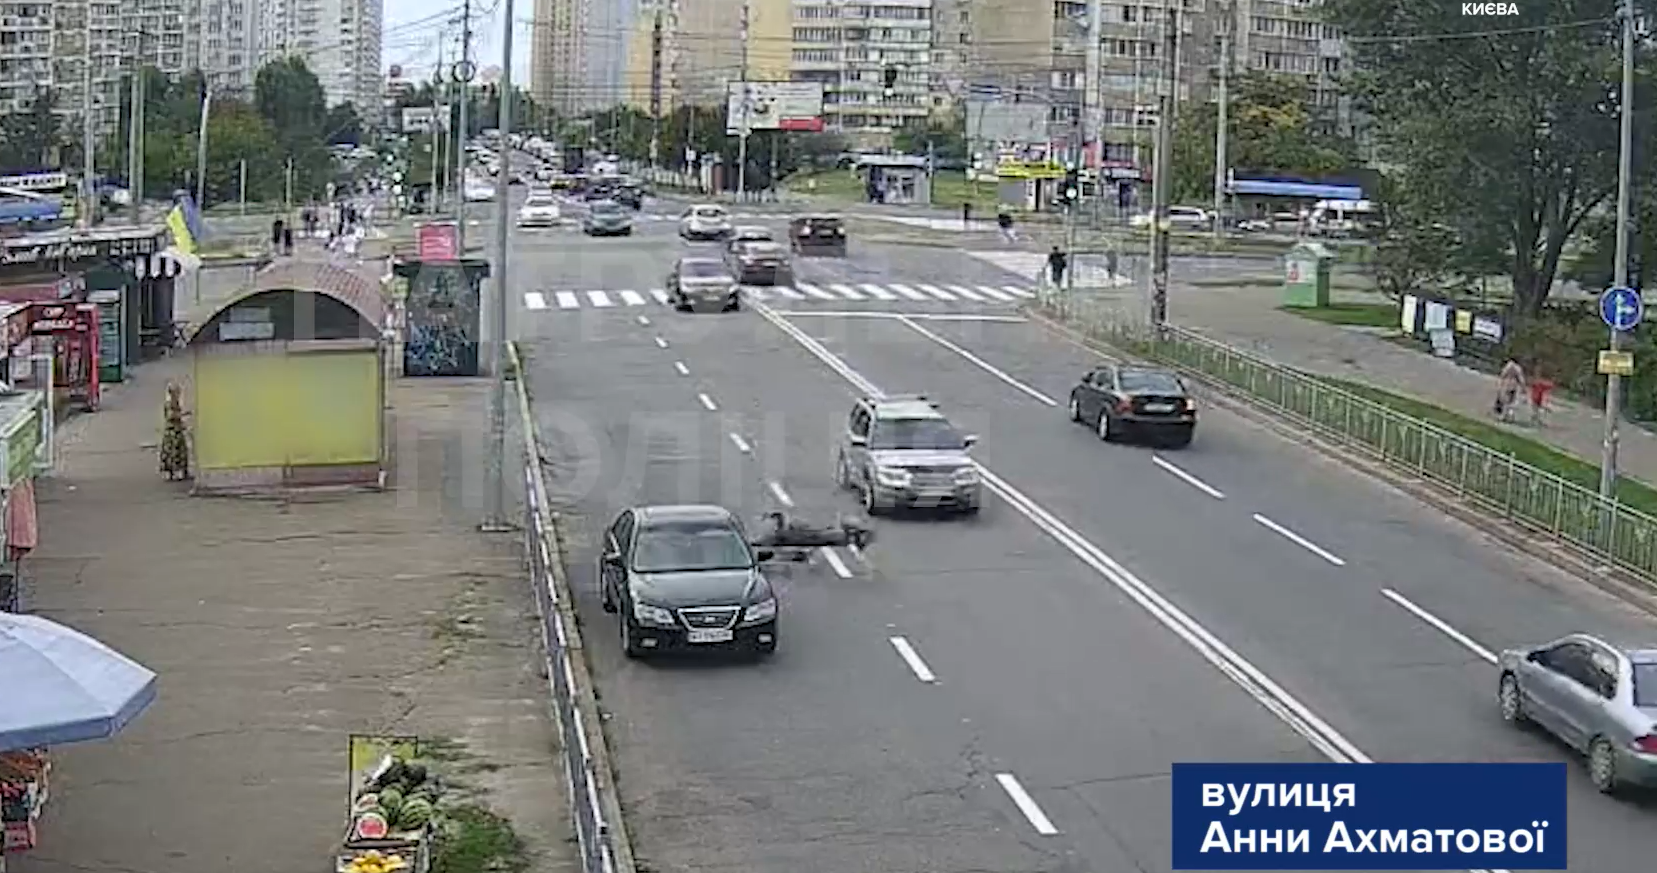 ДТП на Ахматовой: парень на электросамокате упал почти под колеса машины